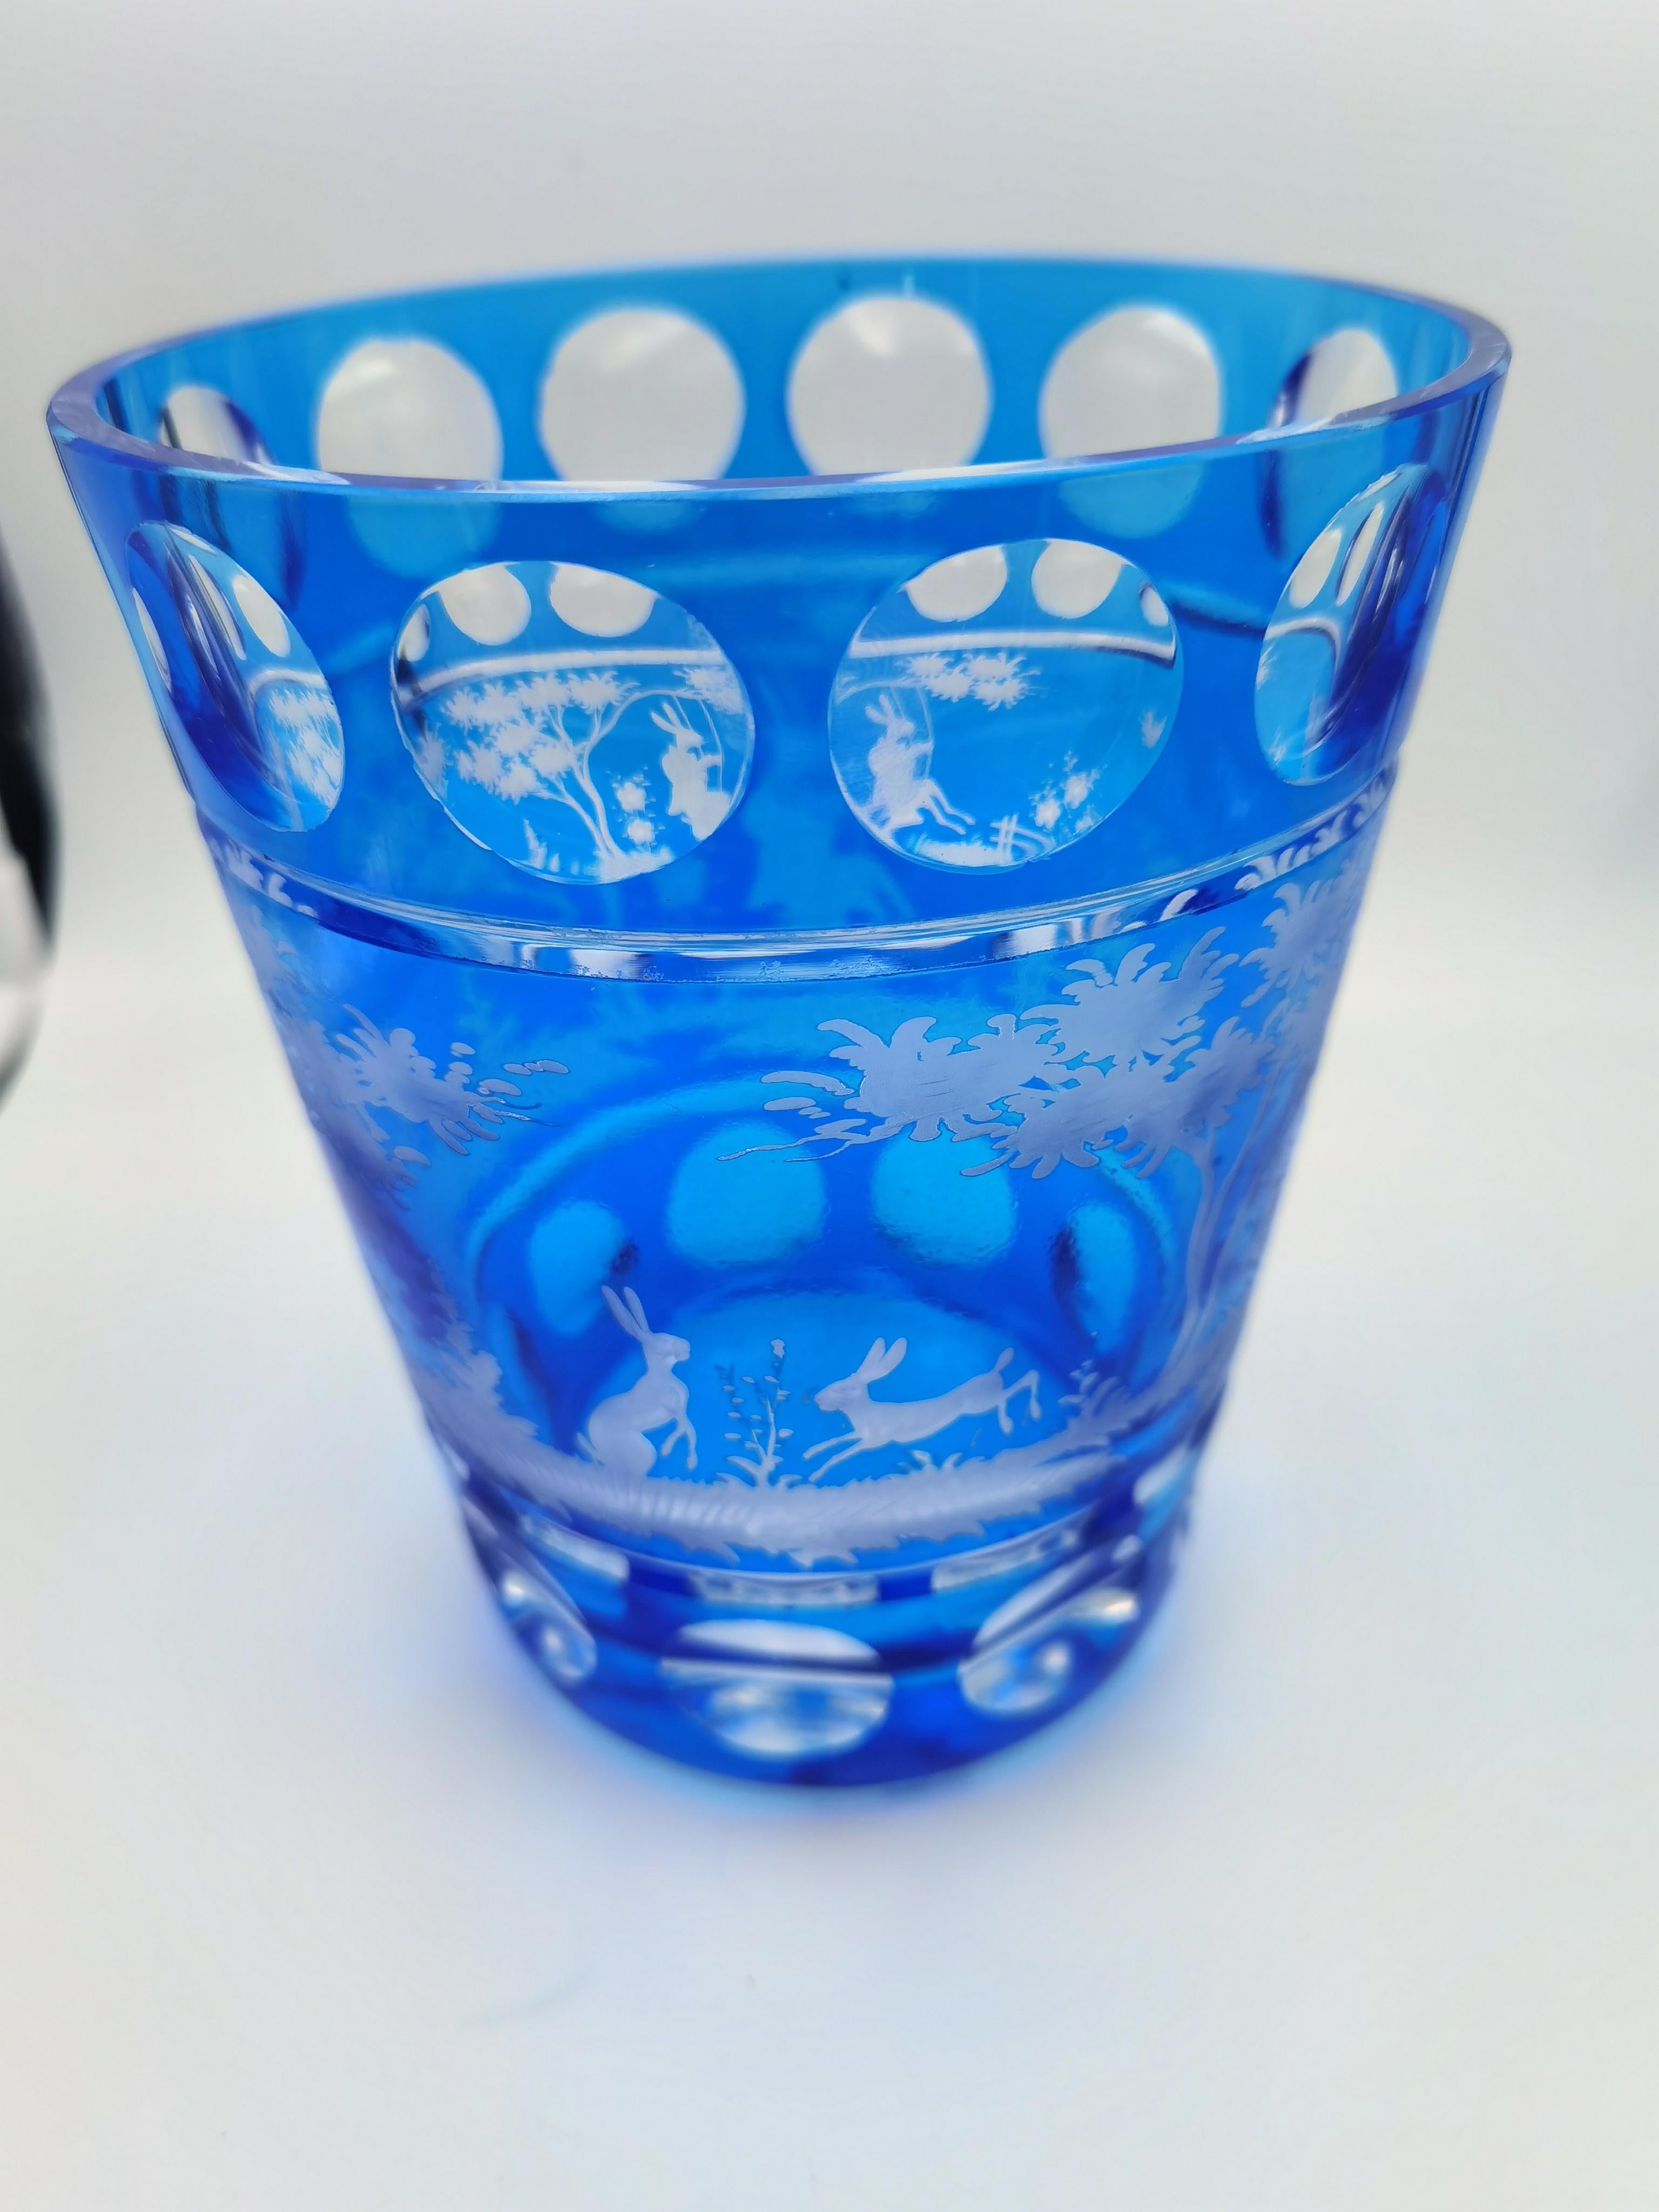 Vase aus mundgeblasenem blauem Kristallglas mit Osterhasendekor. Die Blätter, Hasen und Bäume werden von Glaskünstlern in Bayern/Deutschland handgraviert. Das hier gezeigte Glas hat eine dunkelblaue Farbe und kann auch in anderen Farben wie Grün und